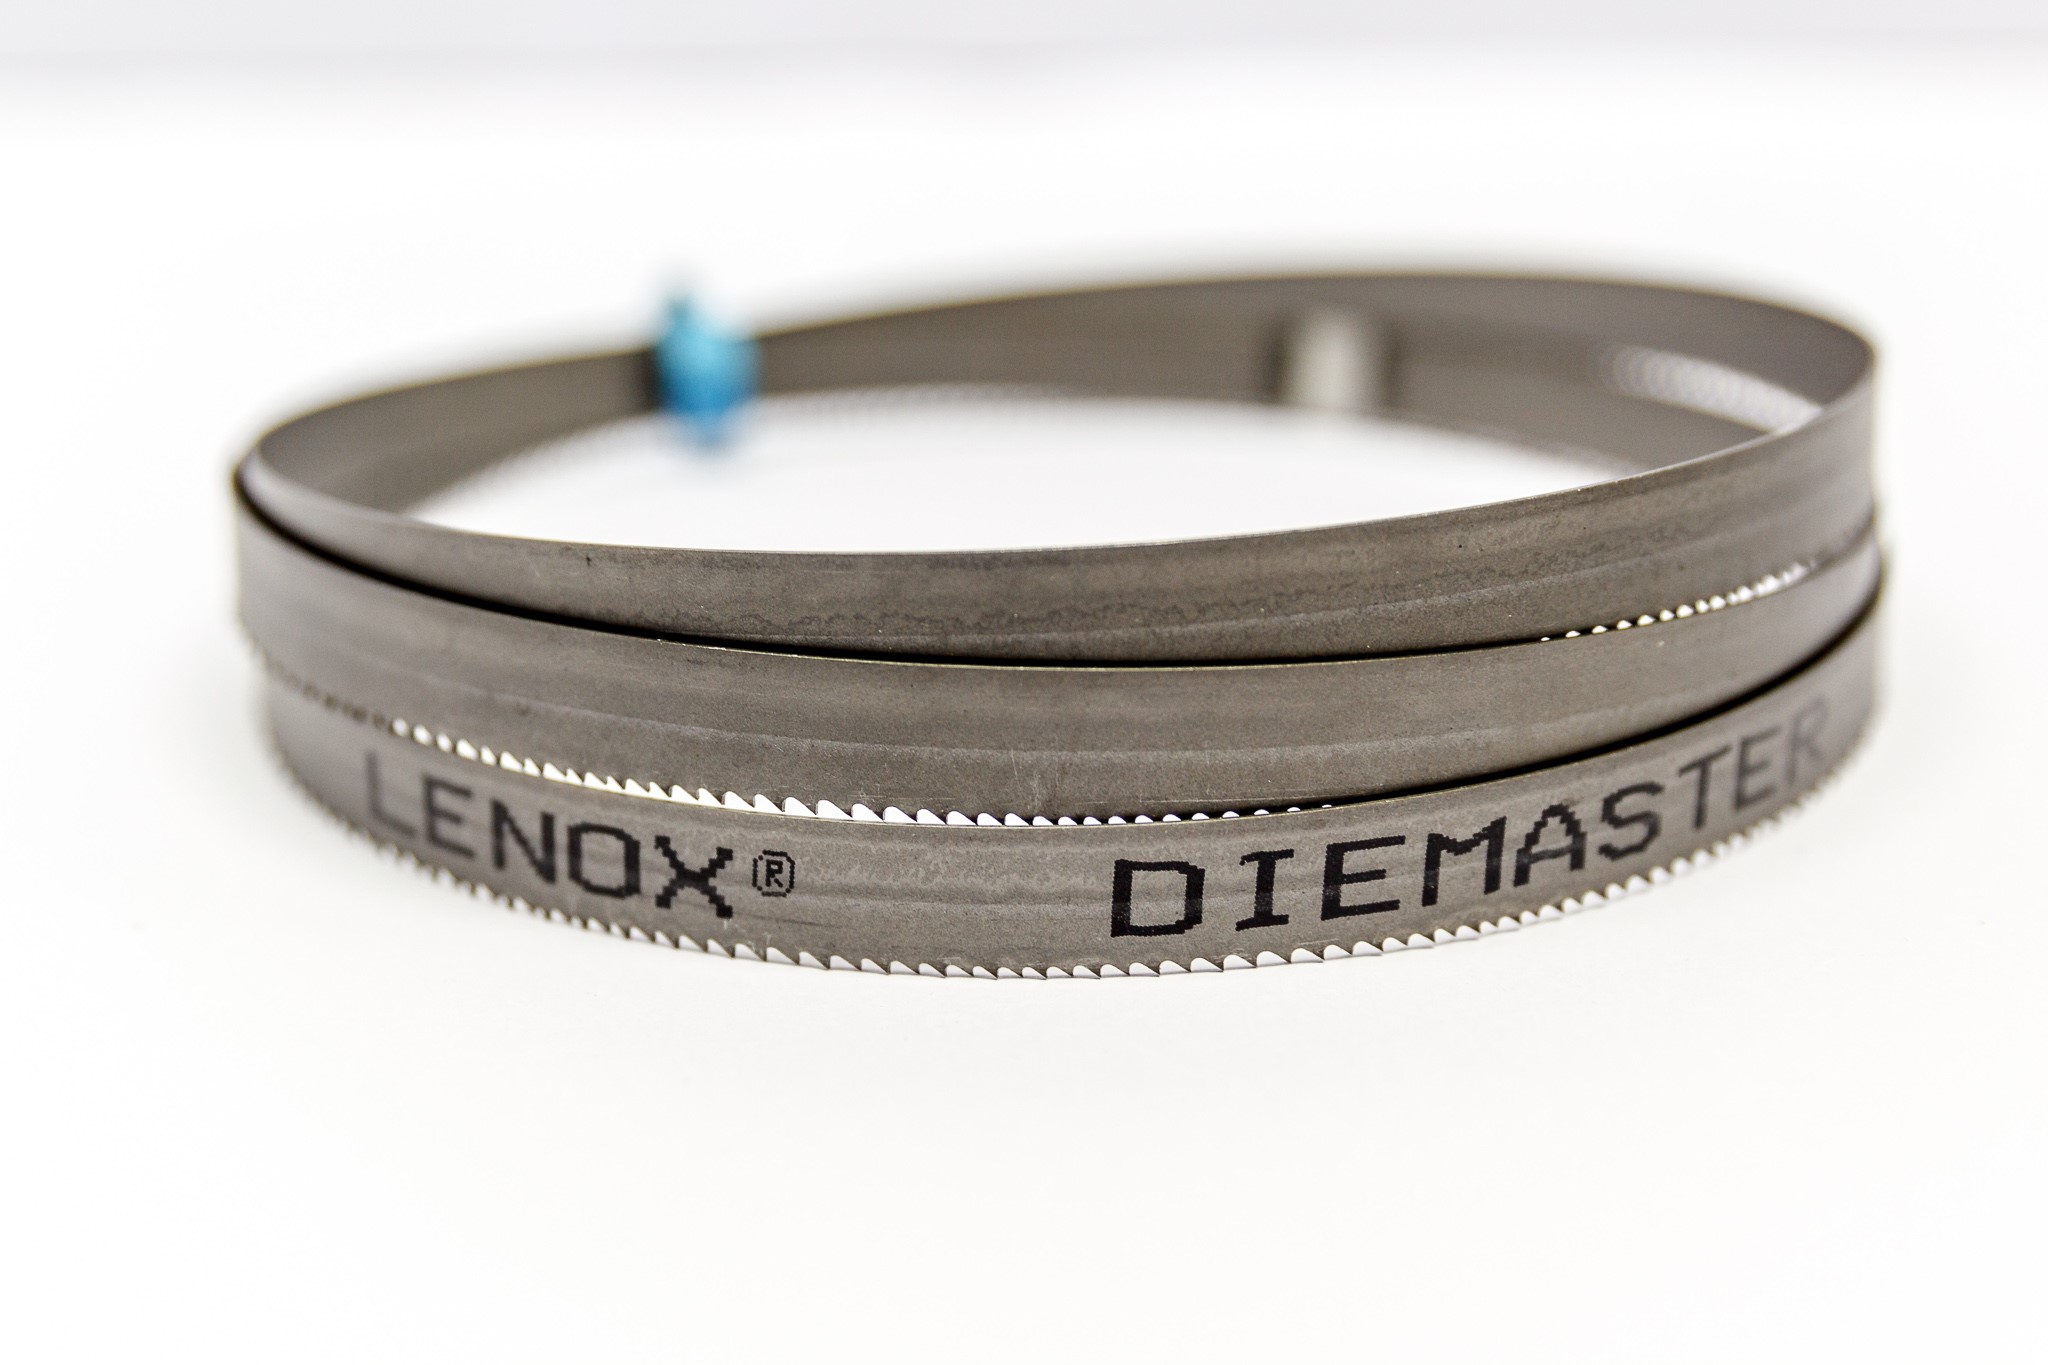 Lenox Diemaster Sägeband online kaufen | Sägeband-Manufaktur.de | Sägeband  Manufaktur | Qualität am laufenden